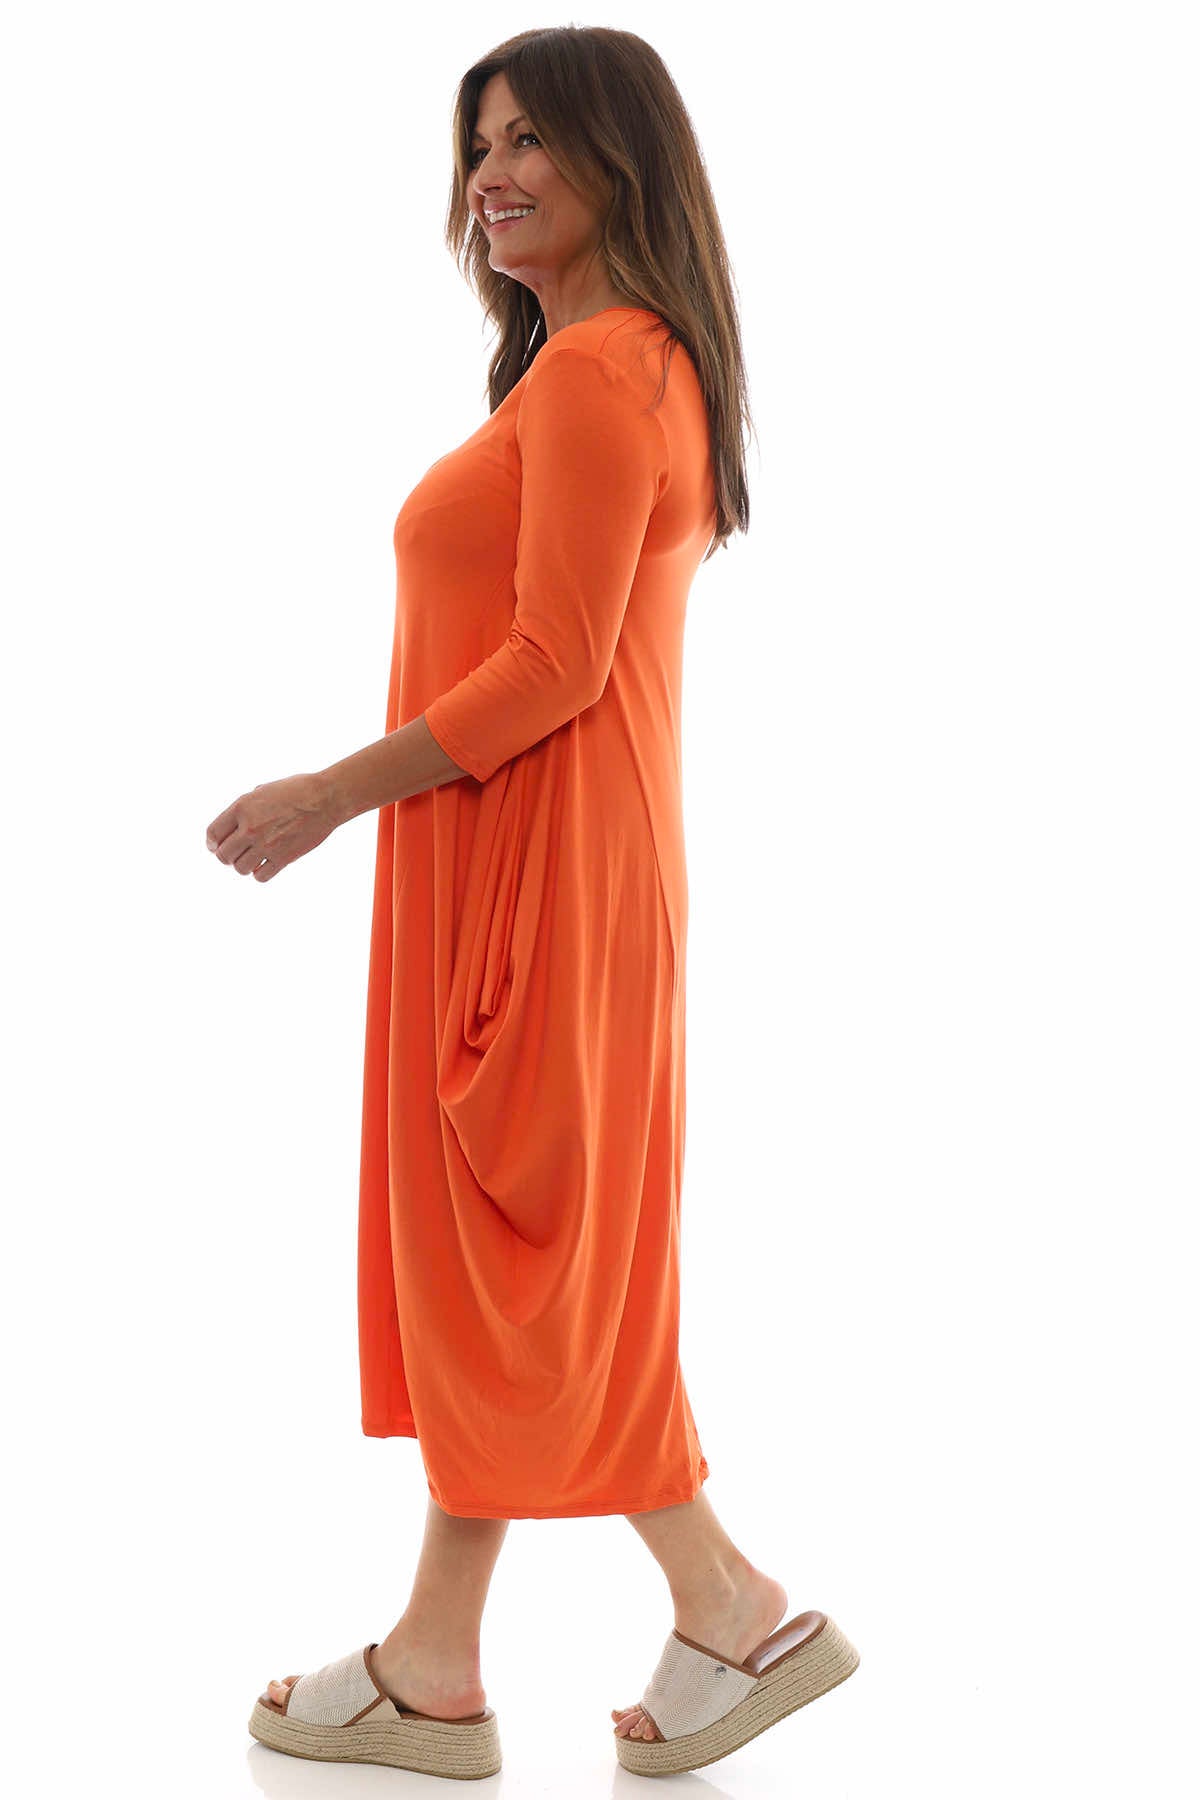 Boswin Dress Orange